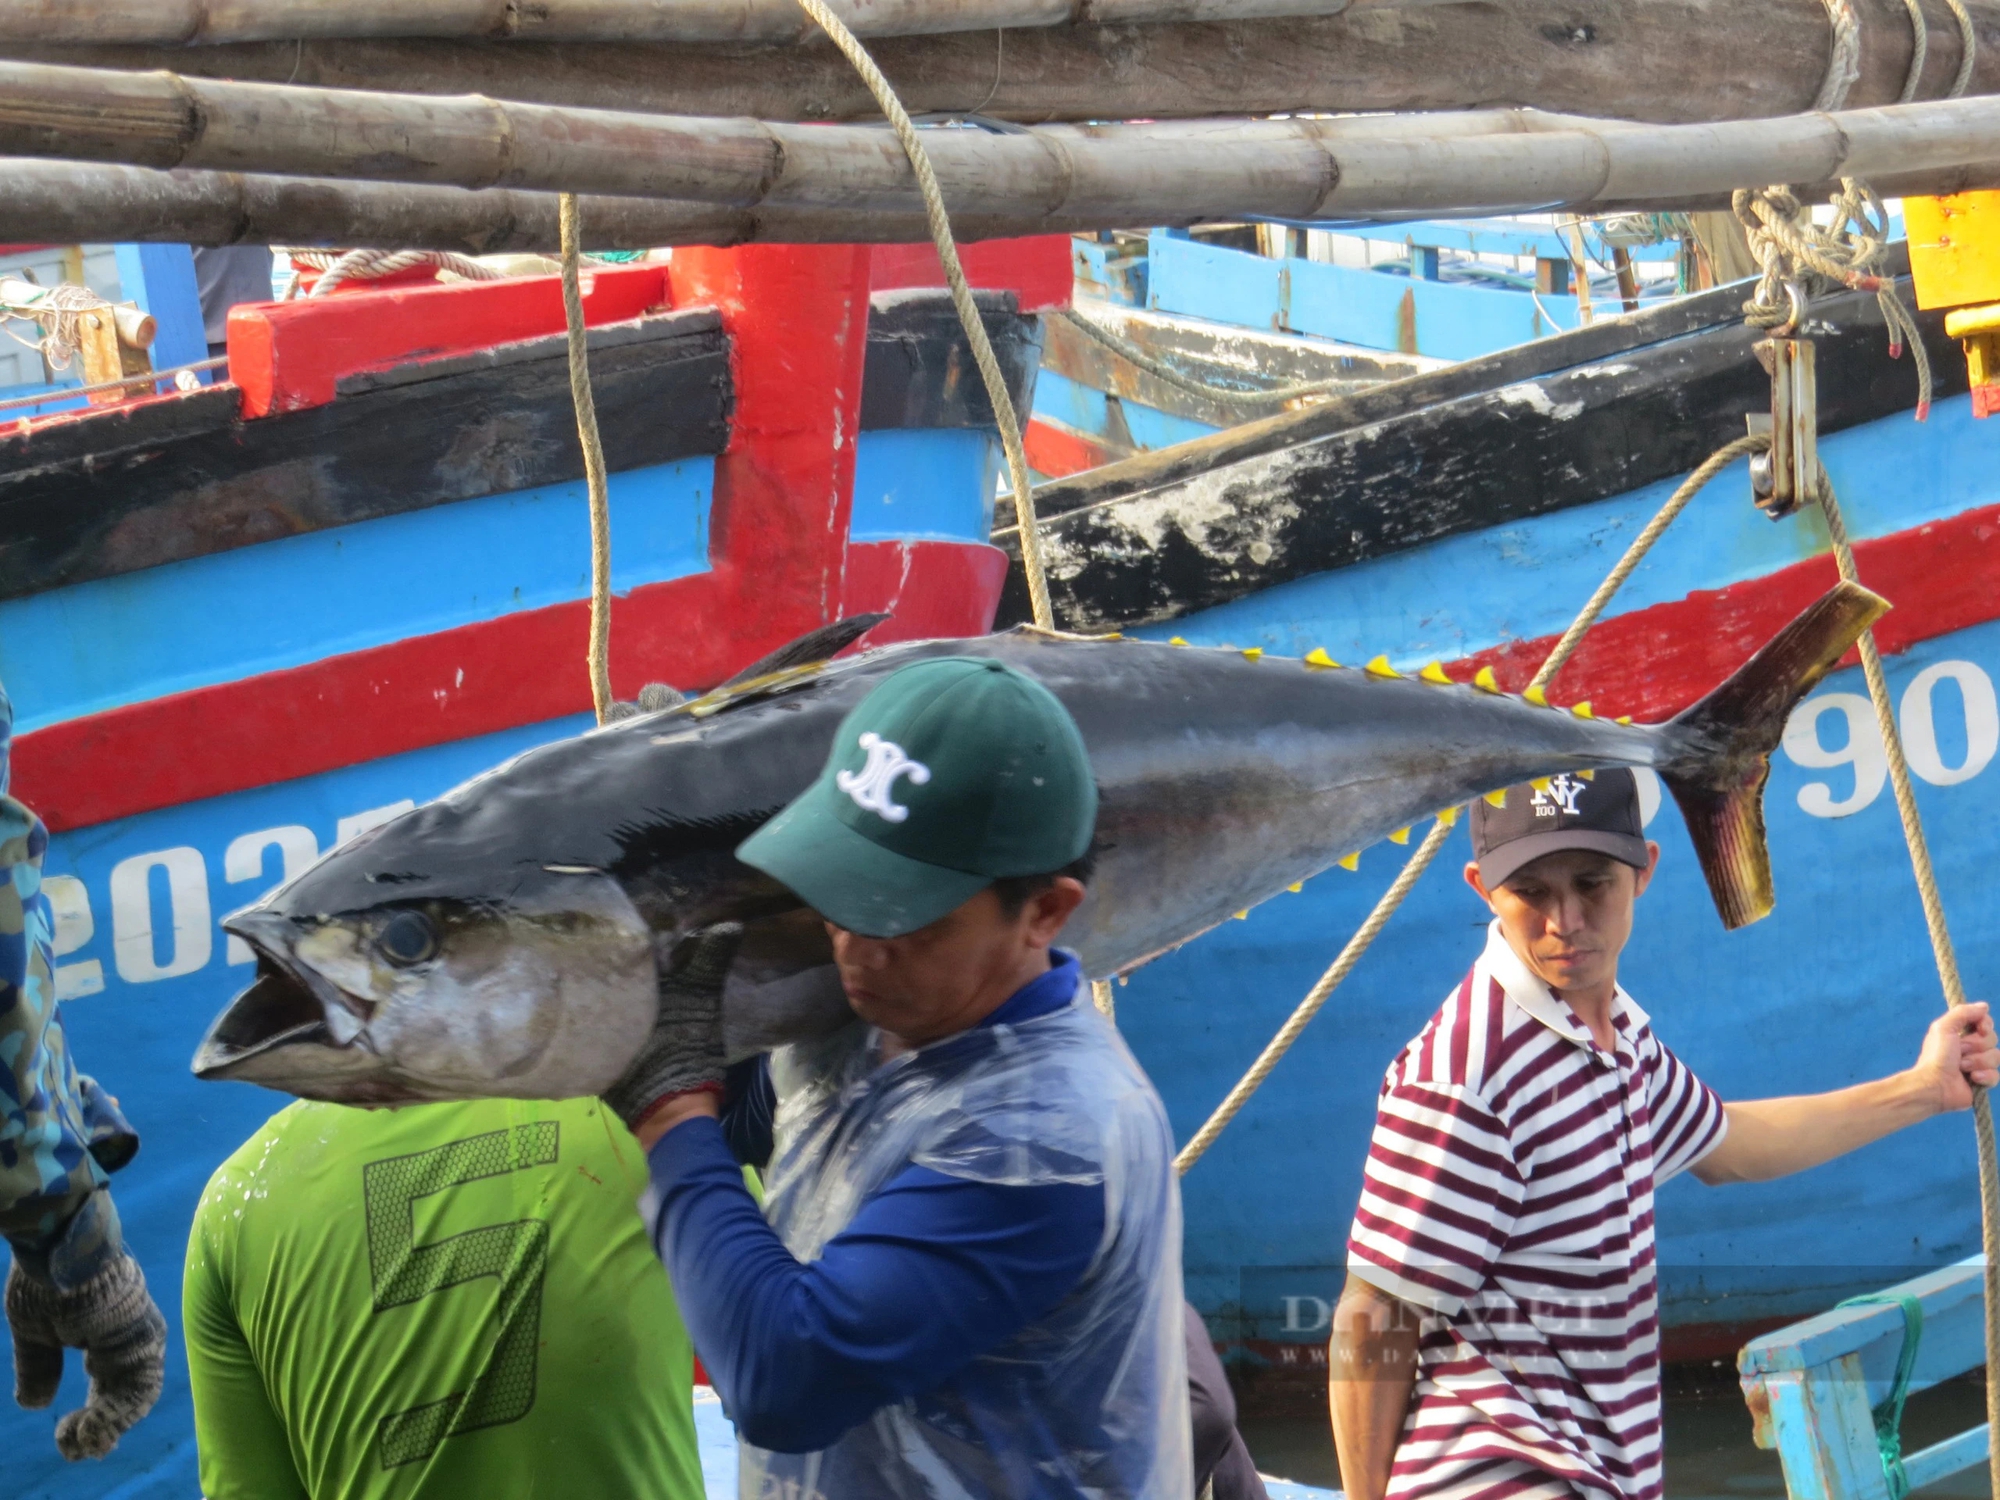 Ra biển câu những con cá khổng lồ, ngư dân Phú Yên lo khi giá cá có xu hướng giảm nhẹ- Ảnh 2.